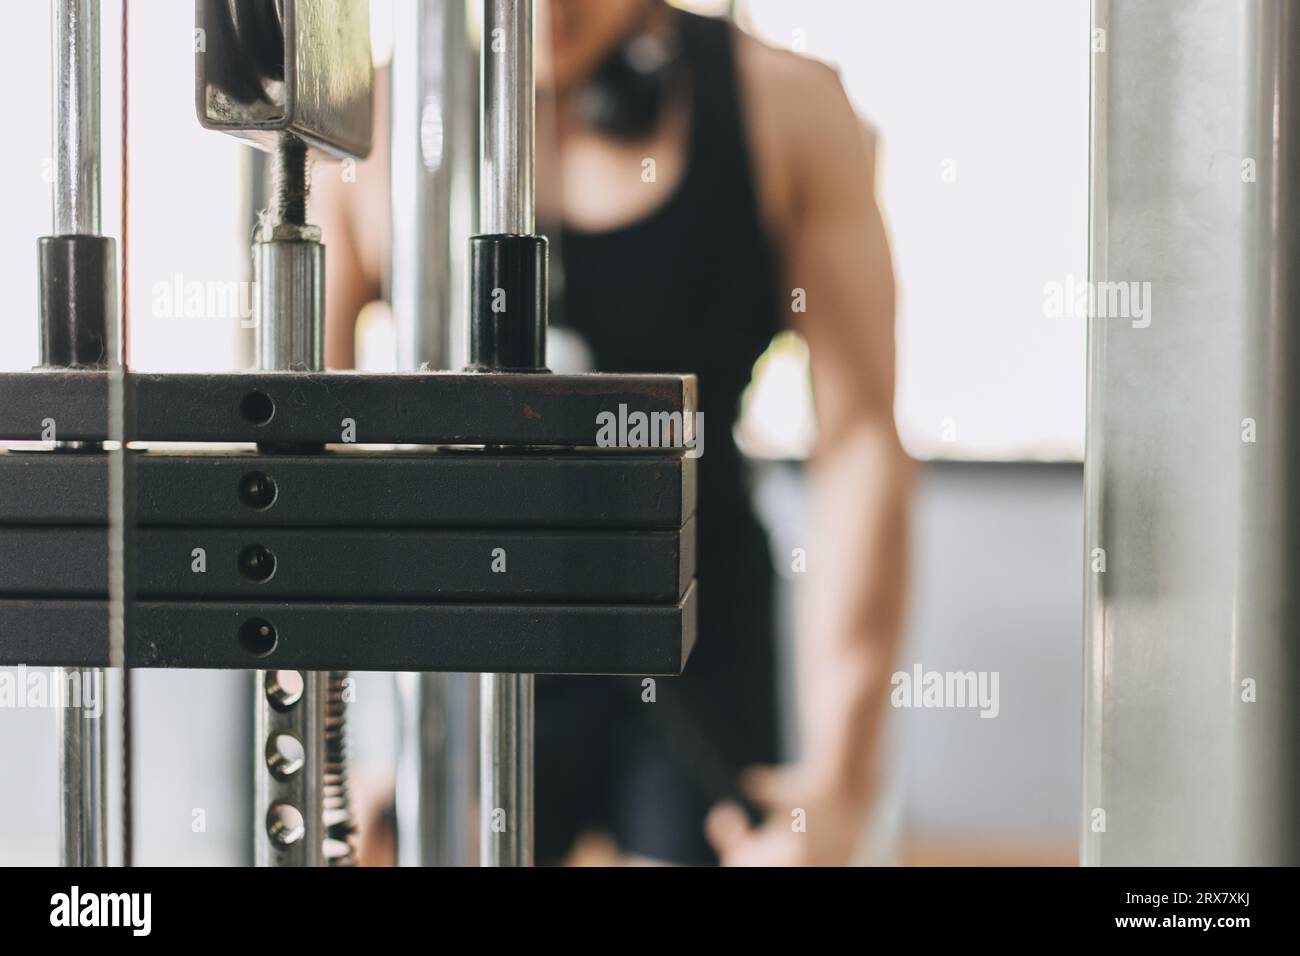 Barre de fer niveau de charge de poids lourd dans la machine d'entraînement musculaire dans le club de sport de fitness Banque D'Images